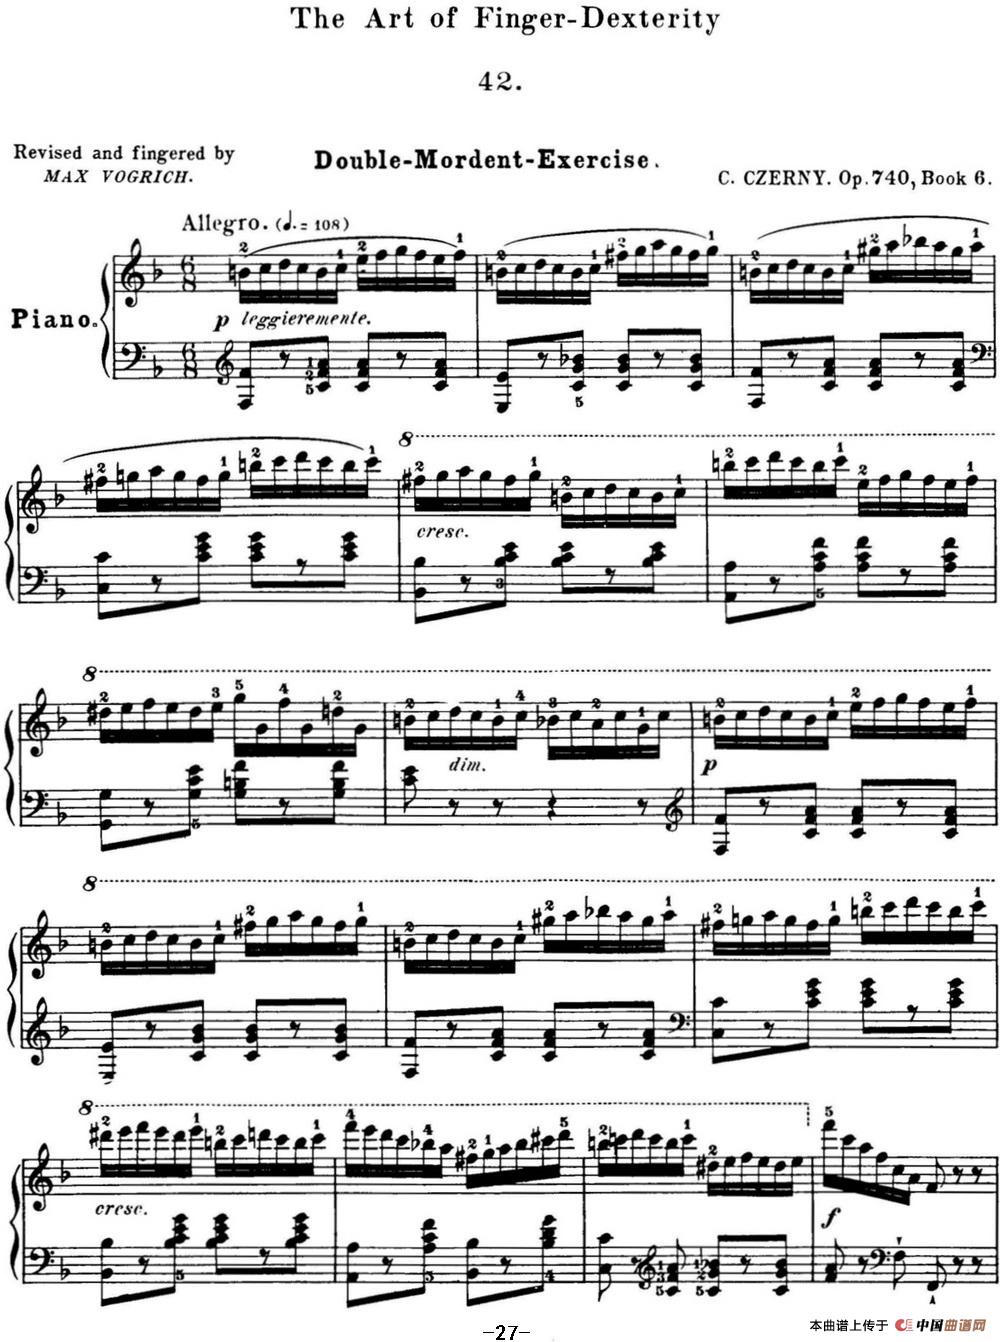 50首车尔尼Op.740钢琴手指灵巧技术练习曲（NO.42）(1)_C740_页面_146.jpg